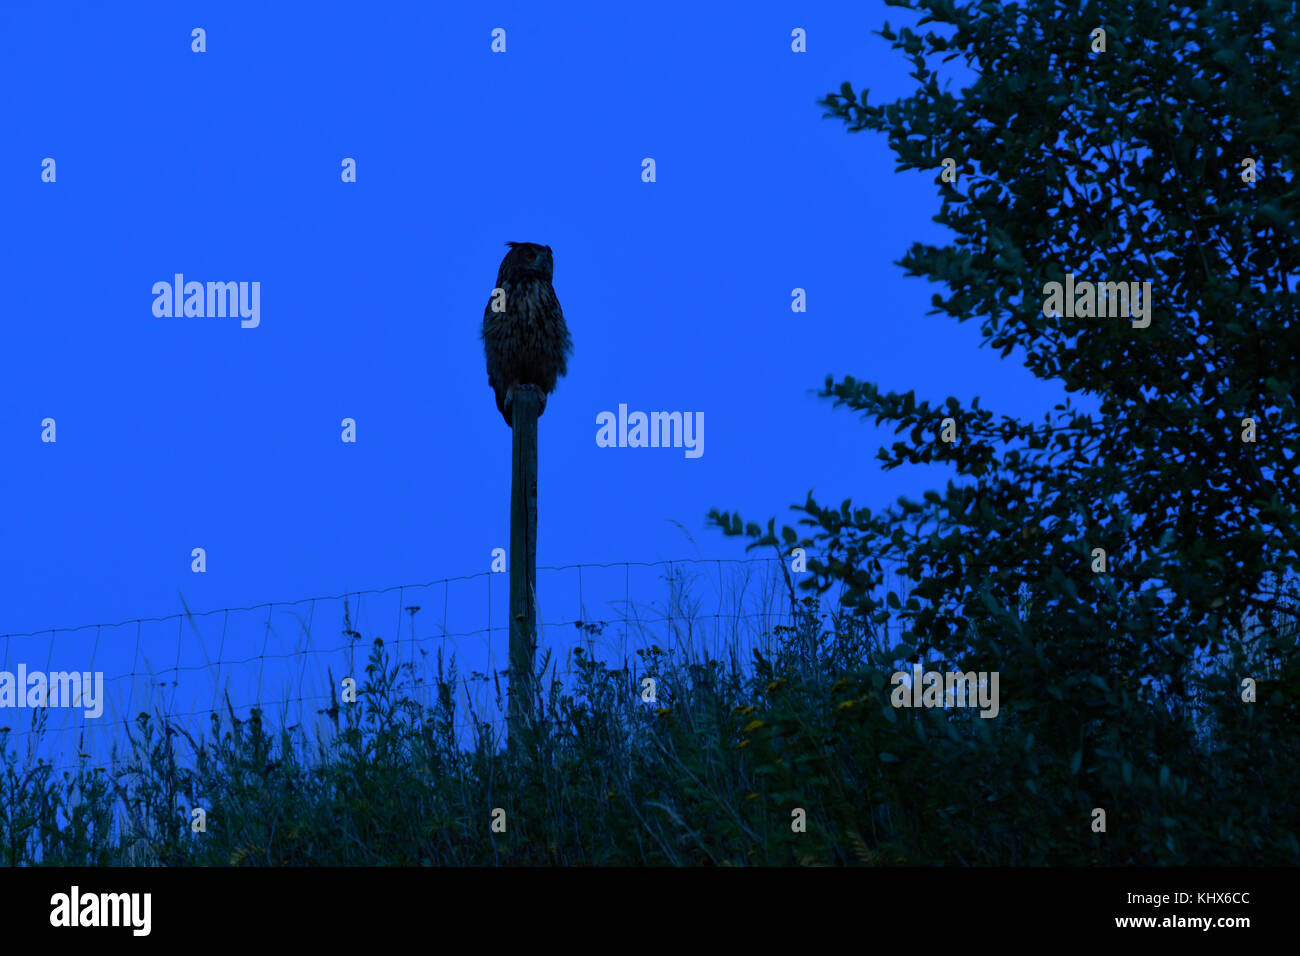 Grand duc ( Bubo bubo ) la nuit, perché sur un fencepost, silhouetté contre le ciel bleu foncé, la chasse pendant la nuit, la faune, l'Europe. Banque D'Images